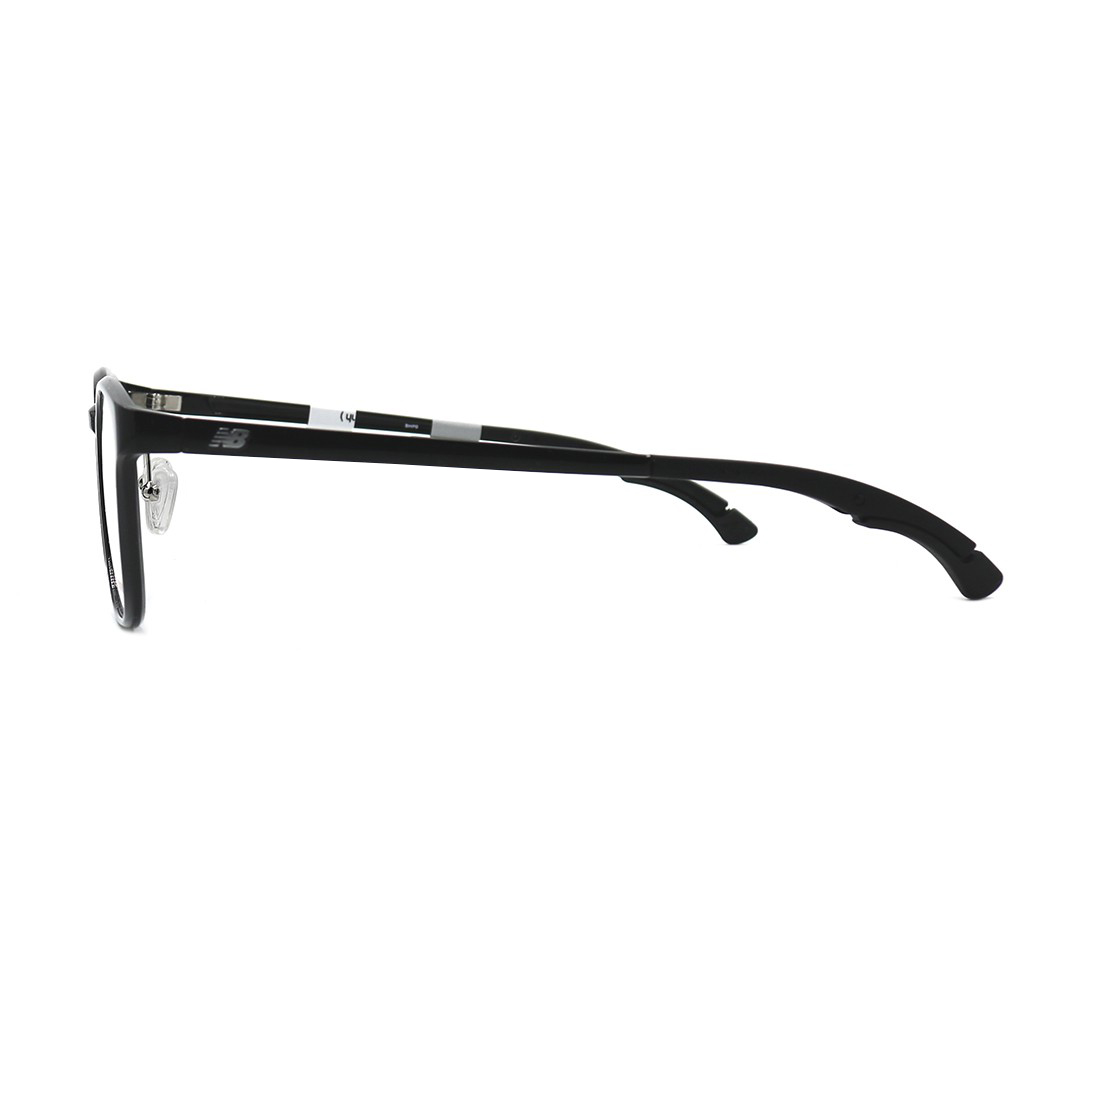 Gọng kính, mắt kính chính hãng Unisex NEW BALANC NB09042 C01 (51.19.150)